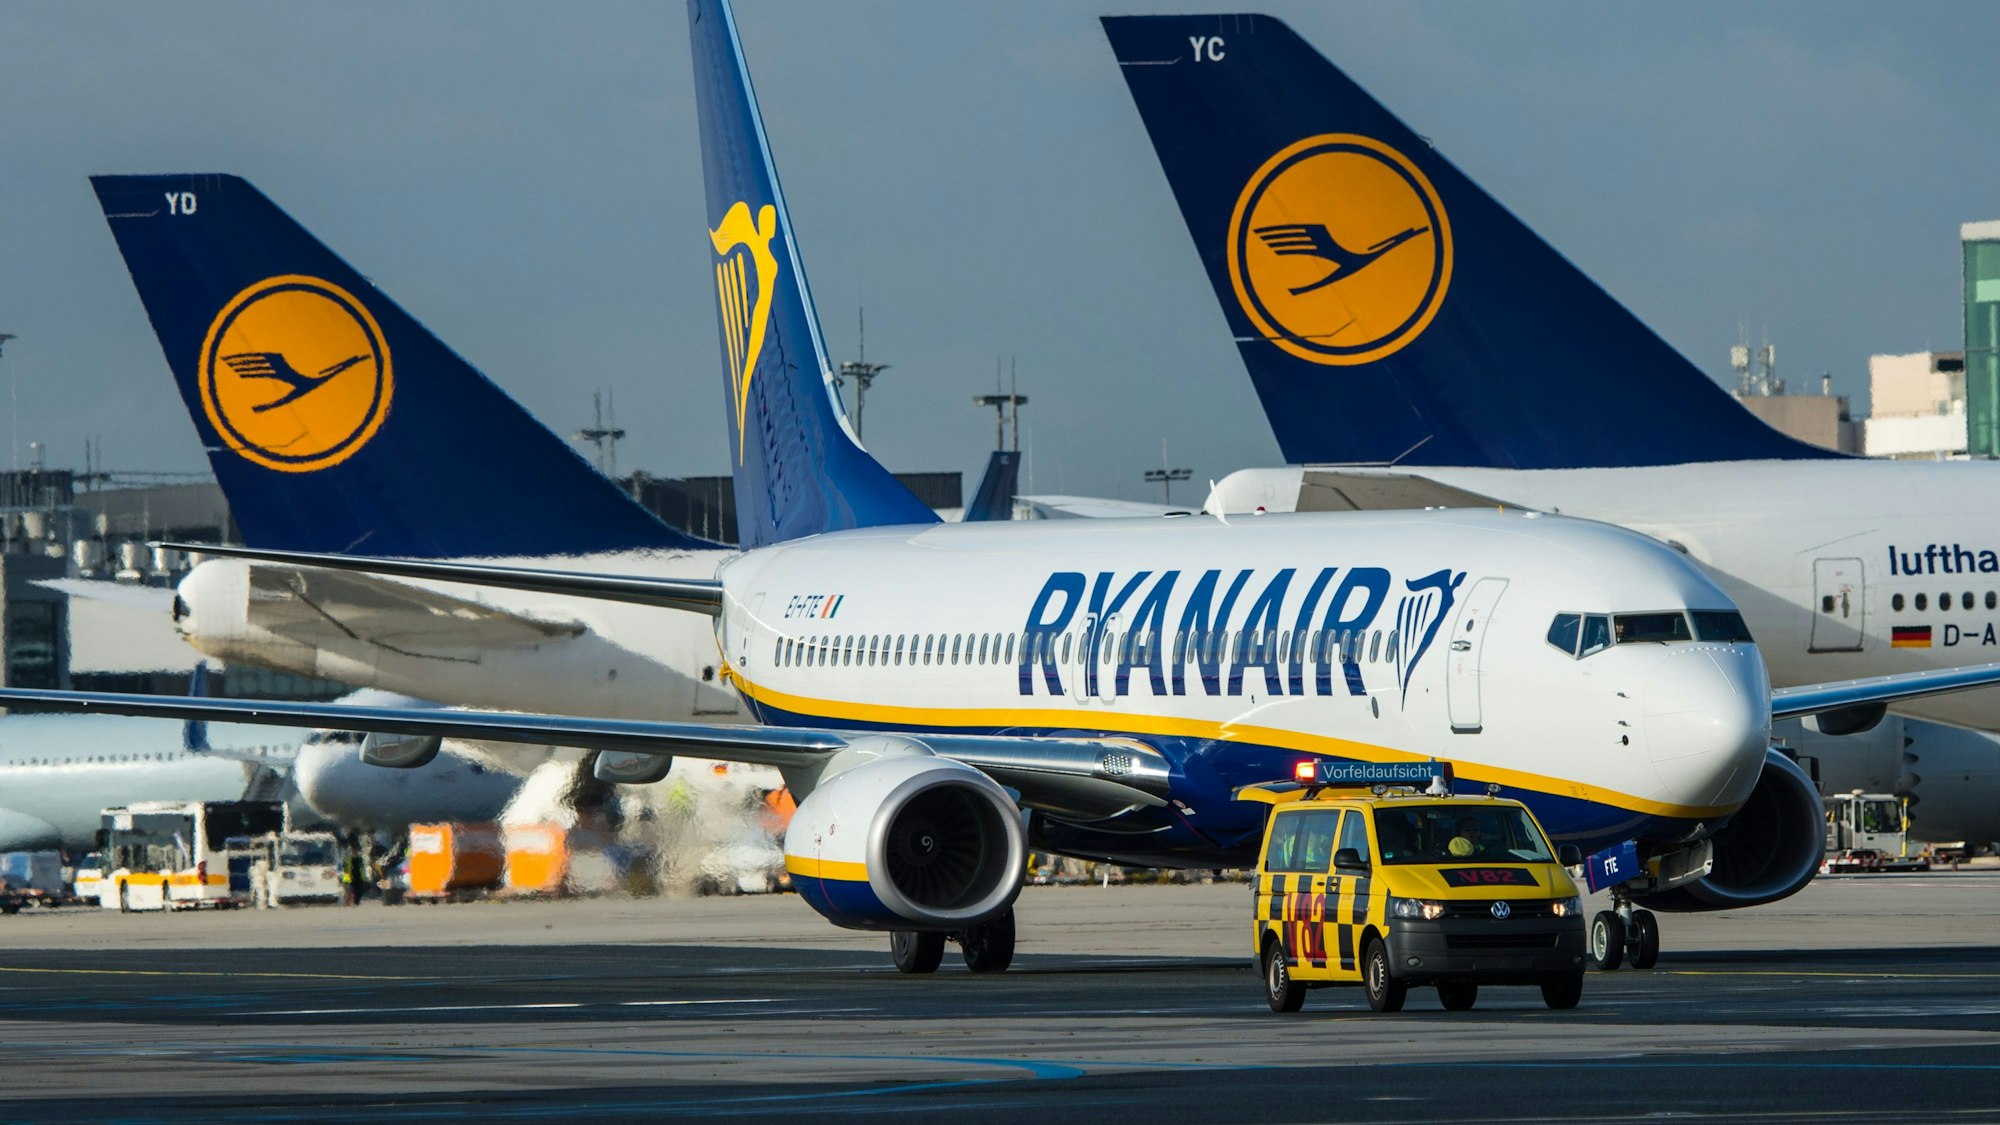 Ein irischer Rollstuhlfahrer musste nach einem Ryanair-Flug nach Schweden aus der Maschine kriechen. Professionelle Assistenz wäre erst eine Stunde später eingetroffen. (Archivbild)